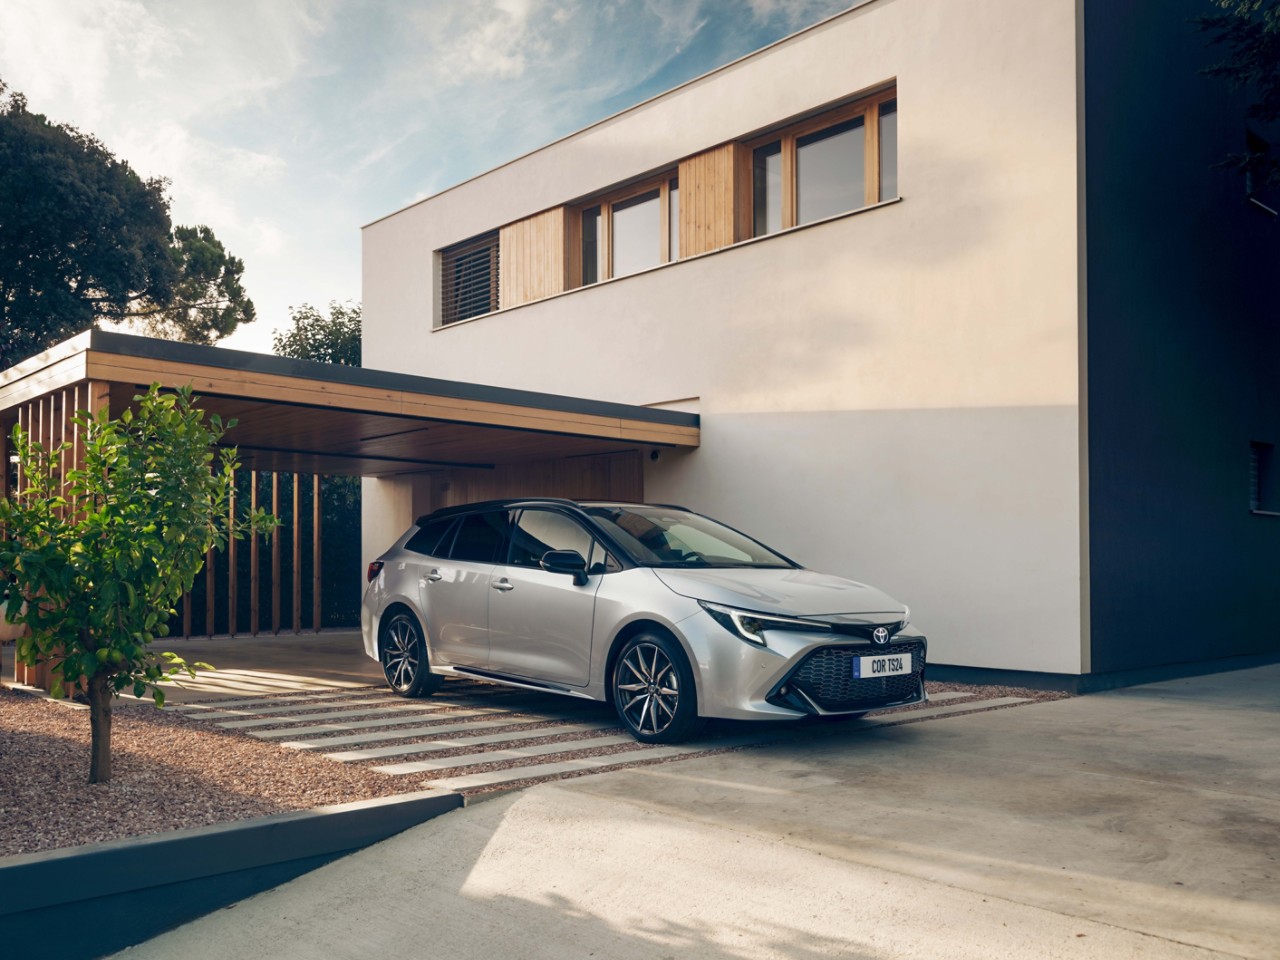 Toyota Corolla Touring Sports parkt vor einem modernen Haus